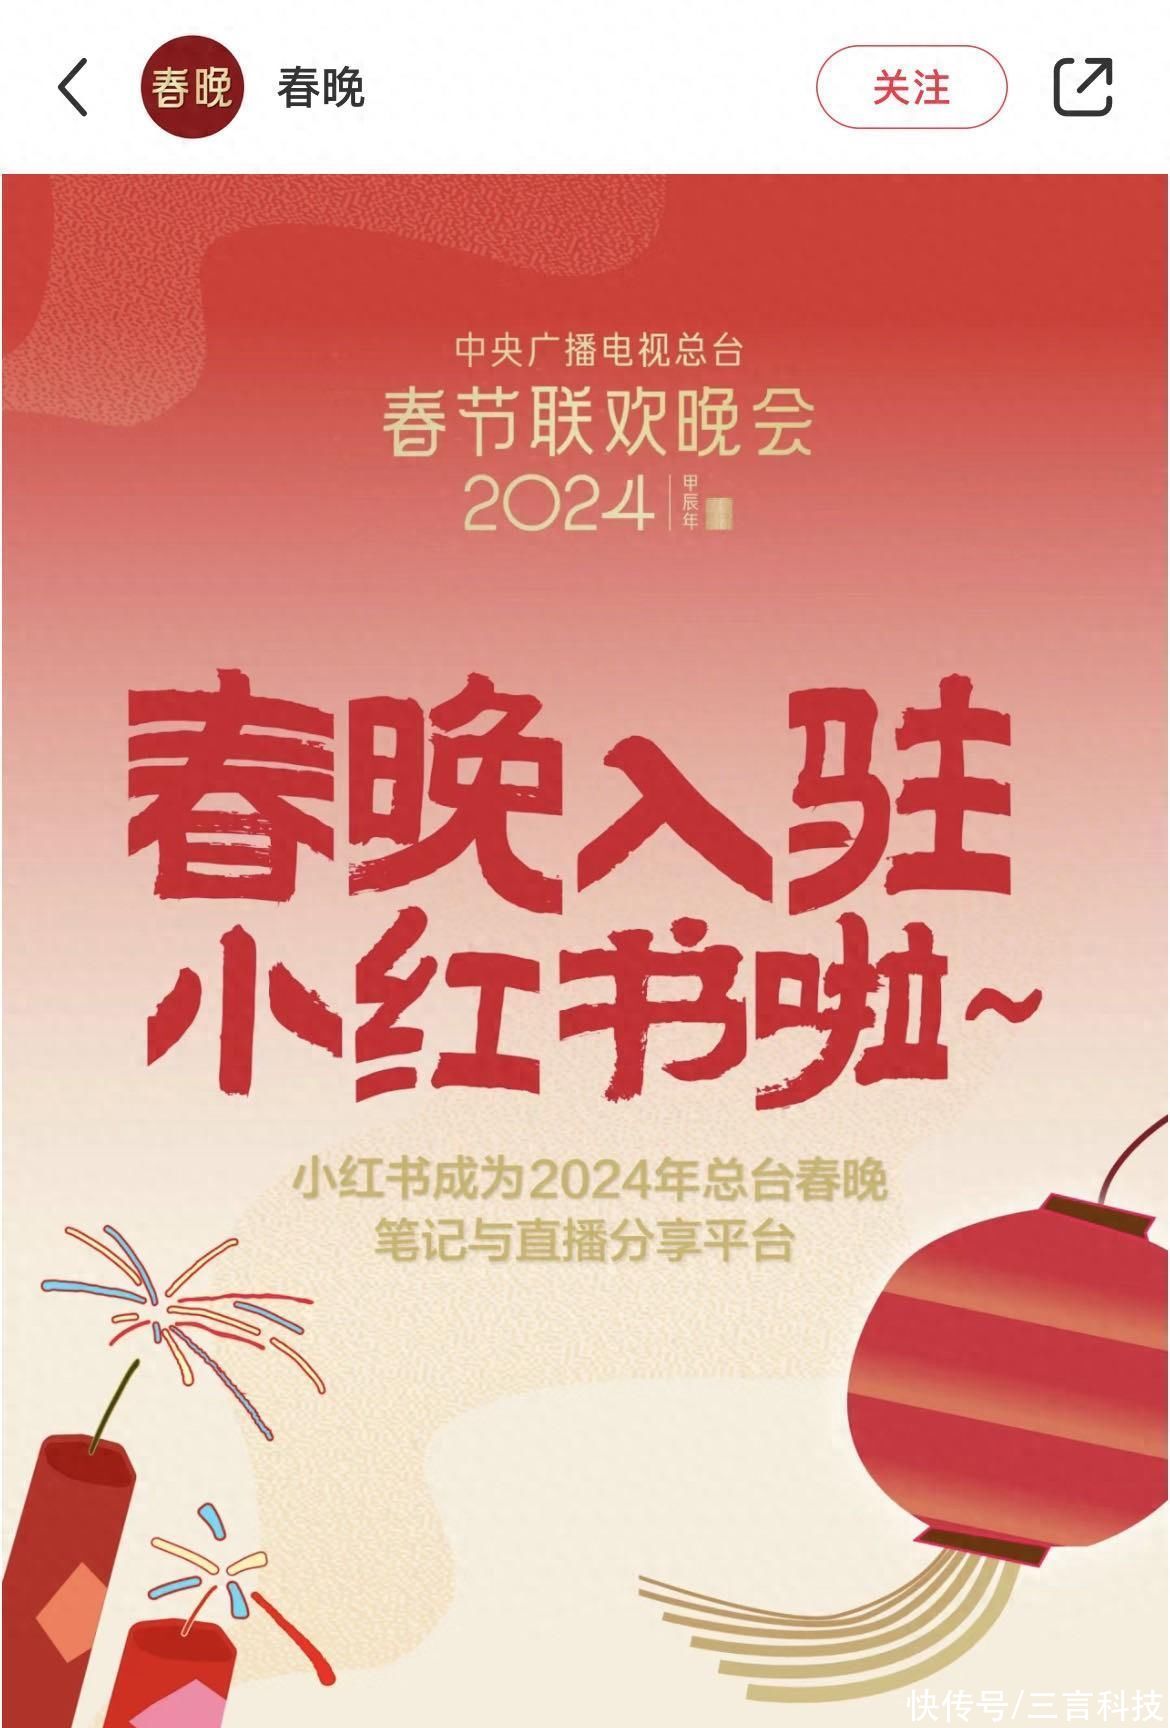 小红书成为央视《2024年春节联欢晚会》笔记与直播分享平台